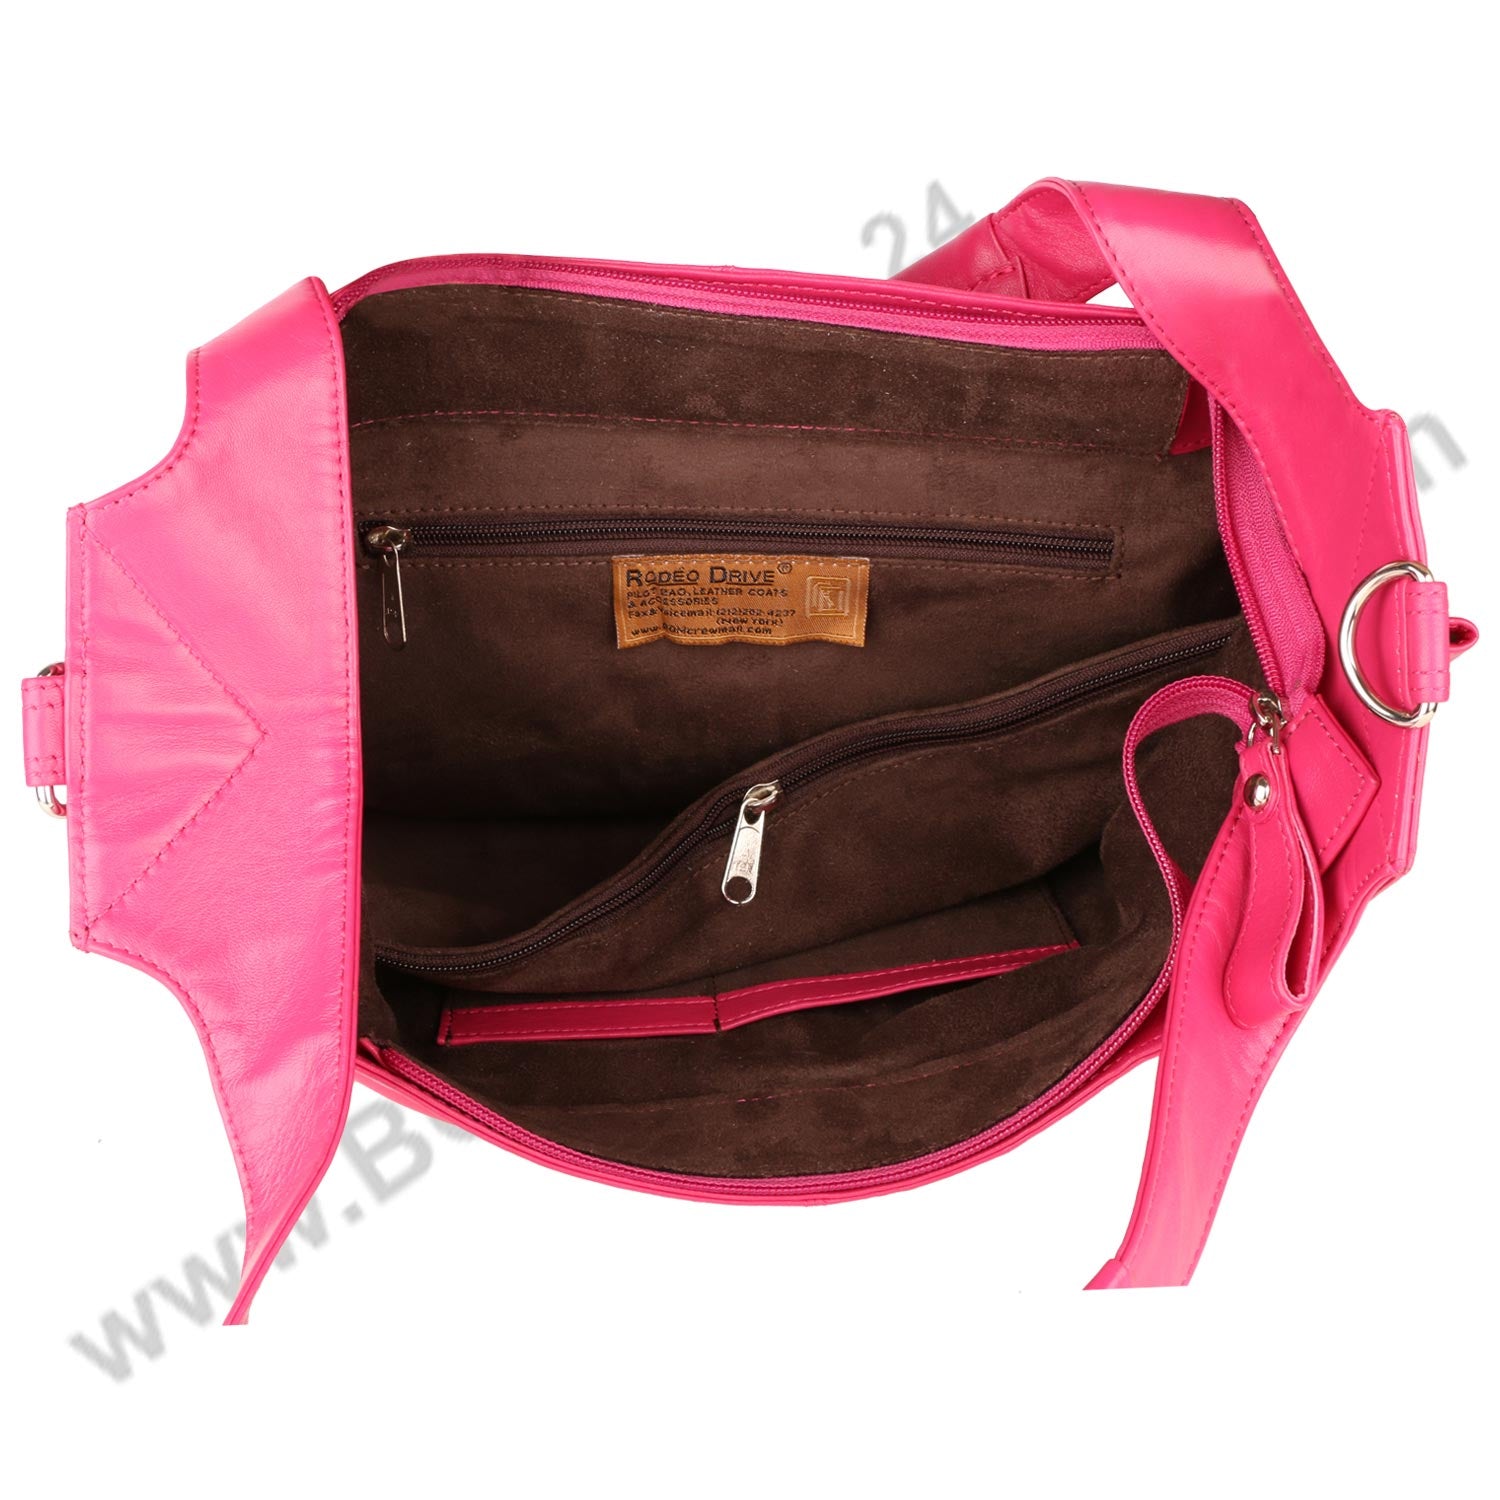 Inside image of pink  FER GAMO HAND BAG